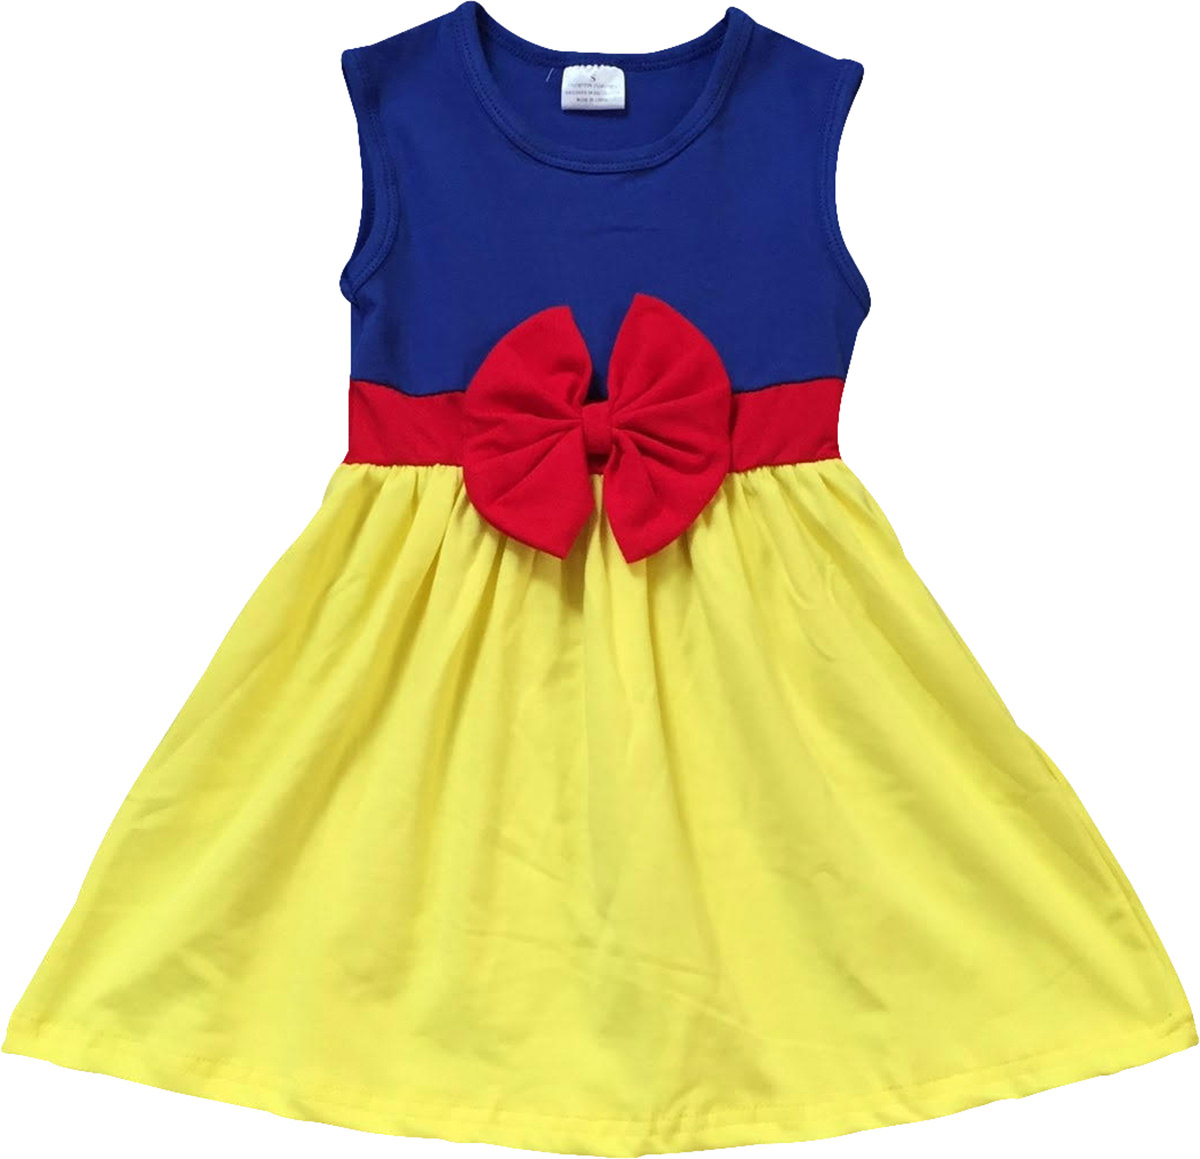 Little Flower Girl Kids Cute Sleeveless Bow Summer Party Flower Girl Dress Yellow 3T S 201280 BNY Corner - image 1 of 1